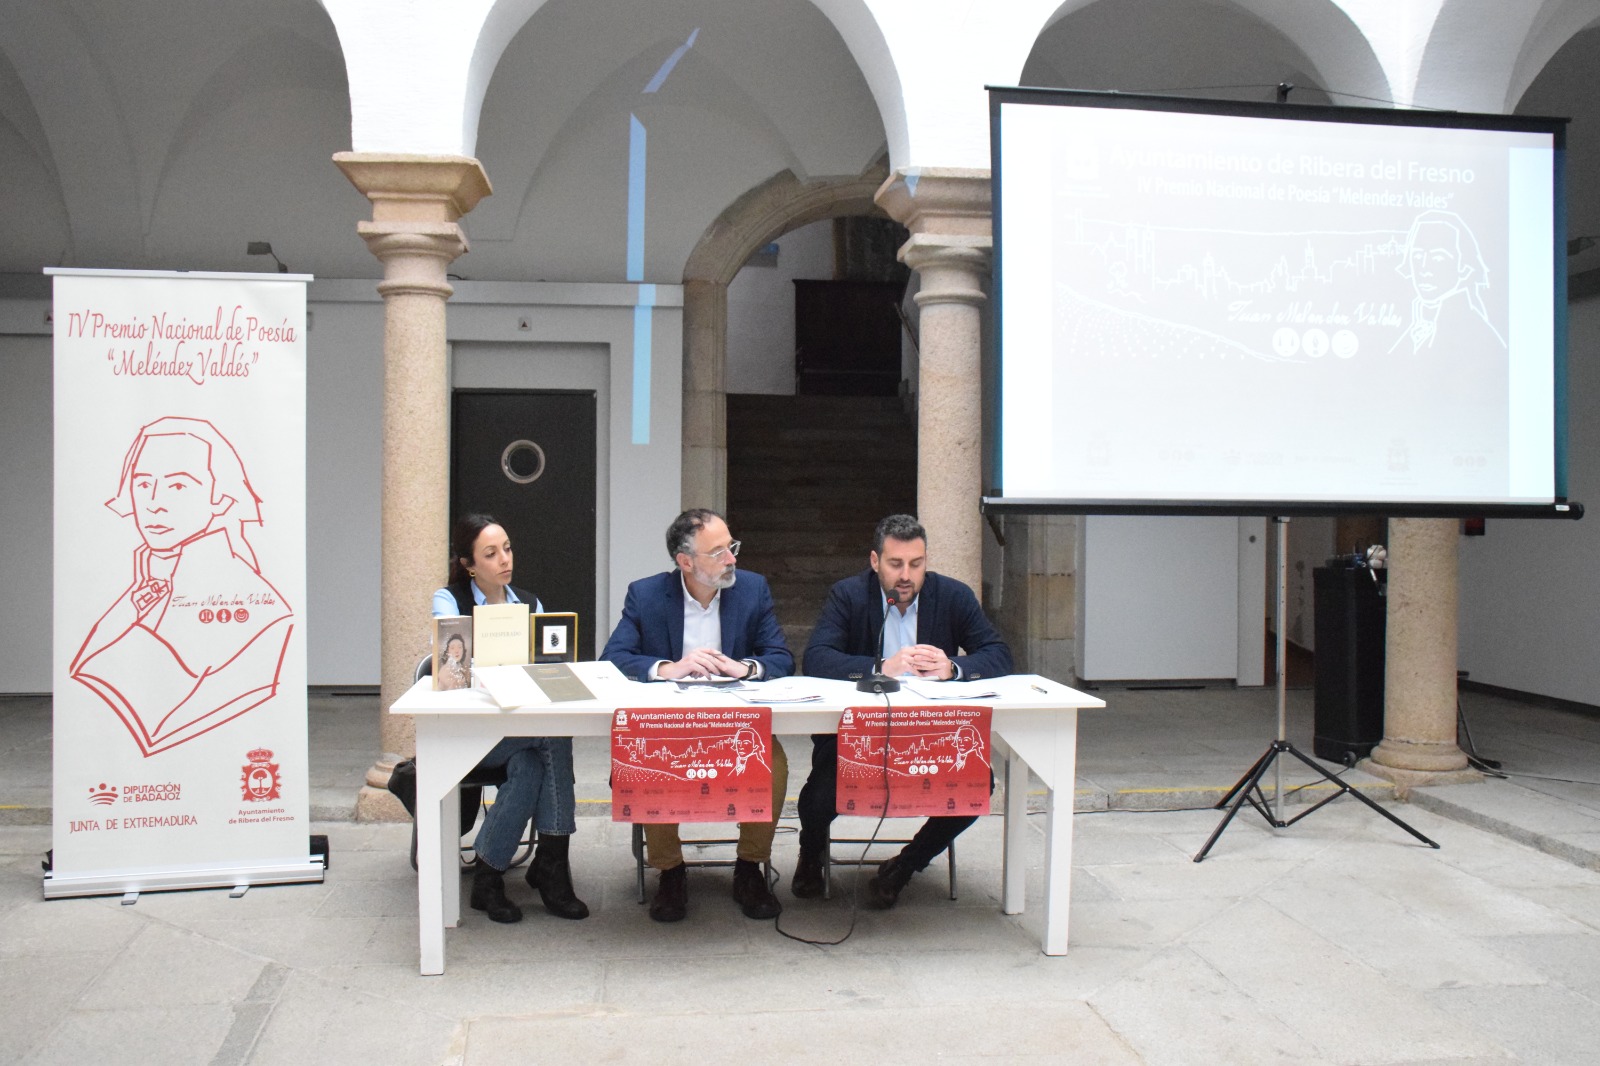 Image 4 of article La Junta de Extremadura subraya su apoyo al Premio Nacional de Poesía 'Meléndez Valdés' en su cuarta edición